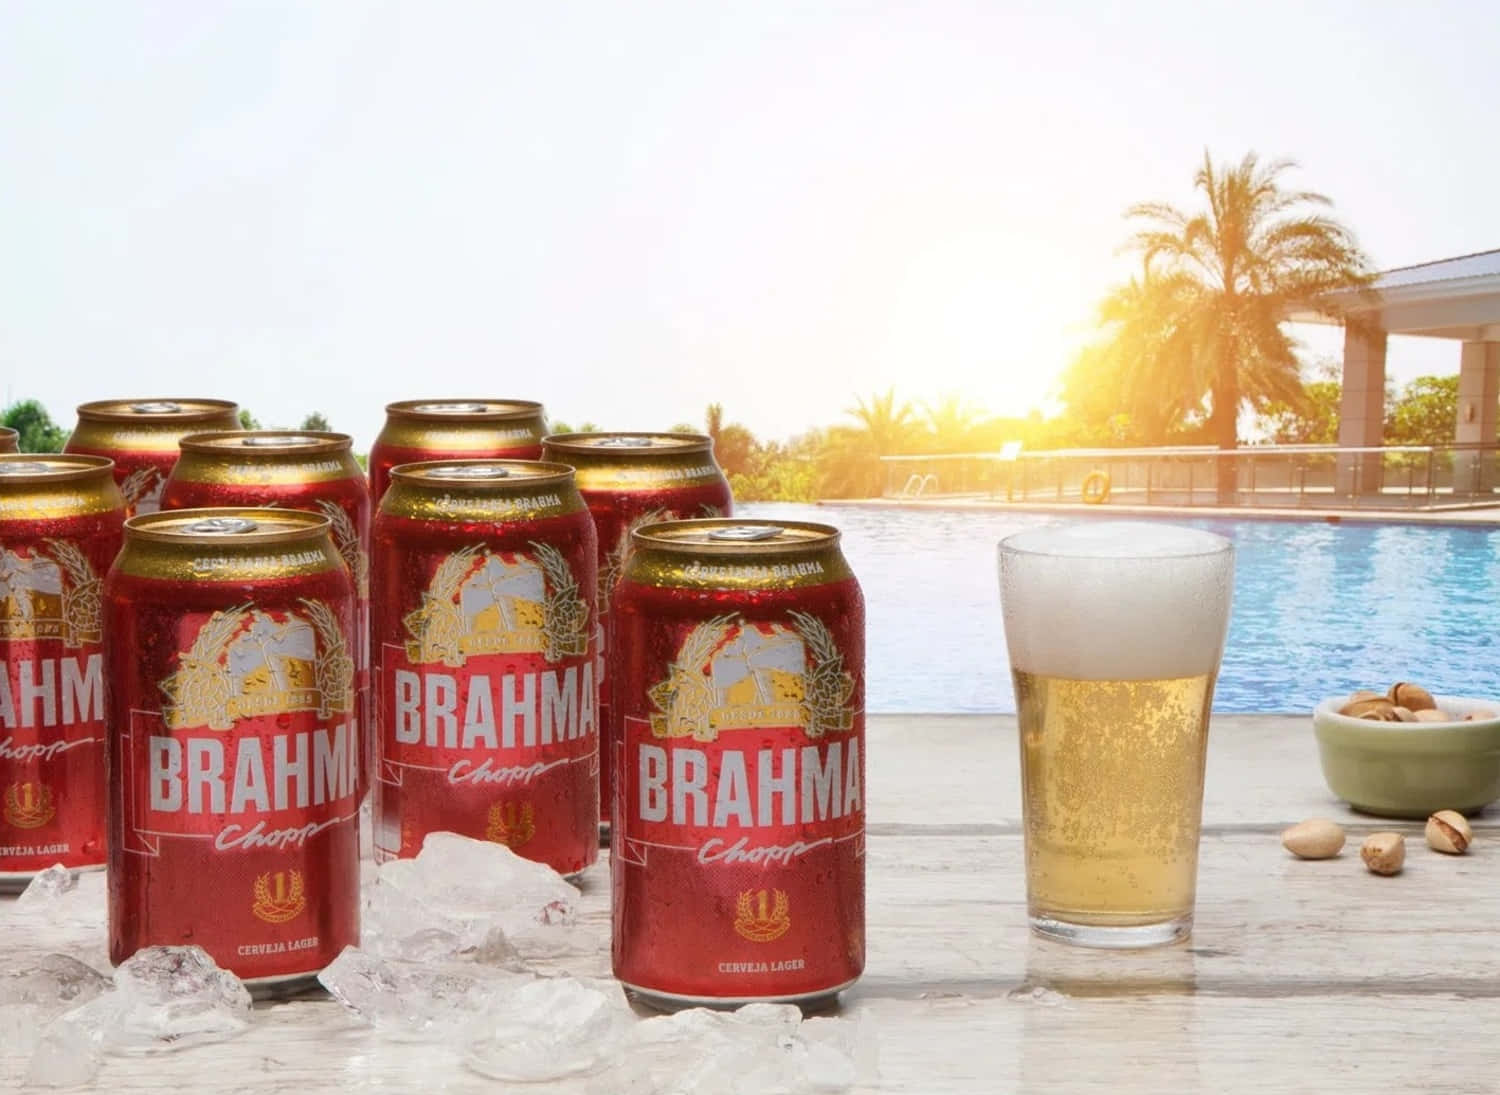 Brasiliansk Brahma Chopp øl dåser ved poolside. Wallpaper